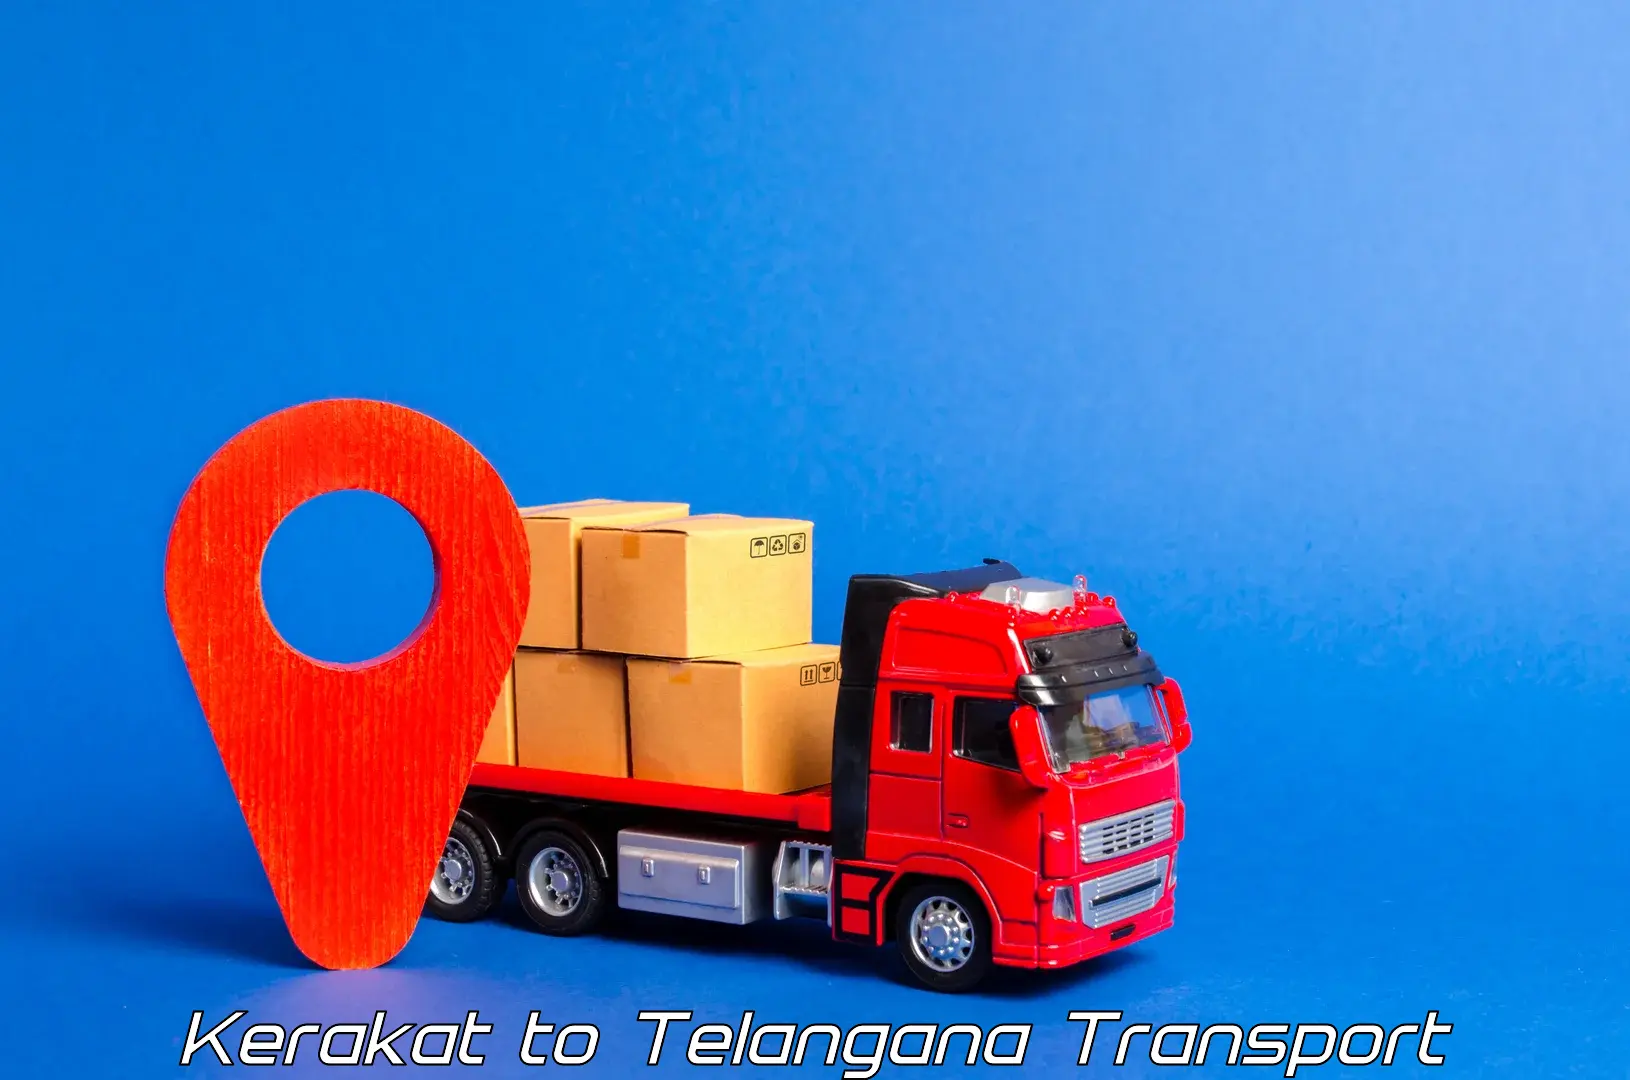 International cargo transportation services in Kerakat to Tallada